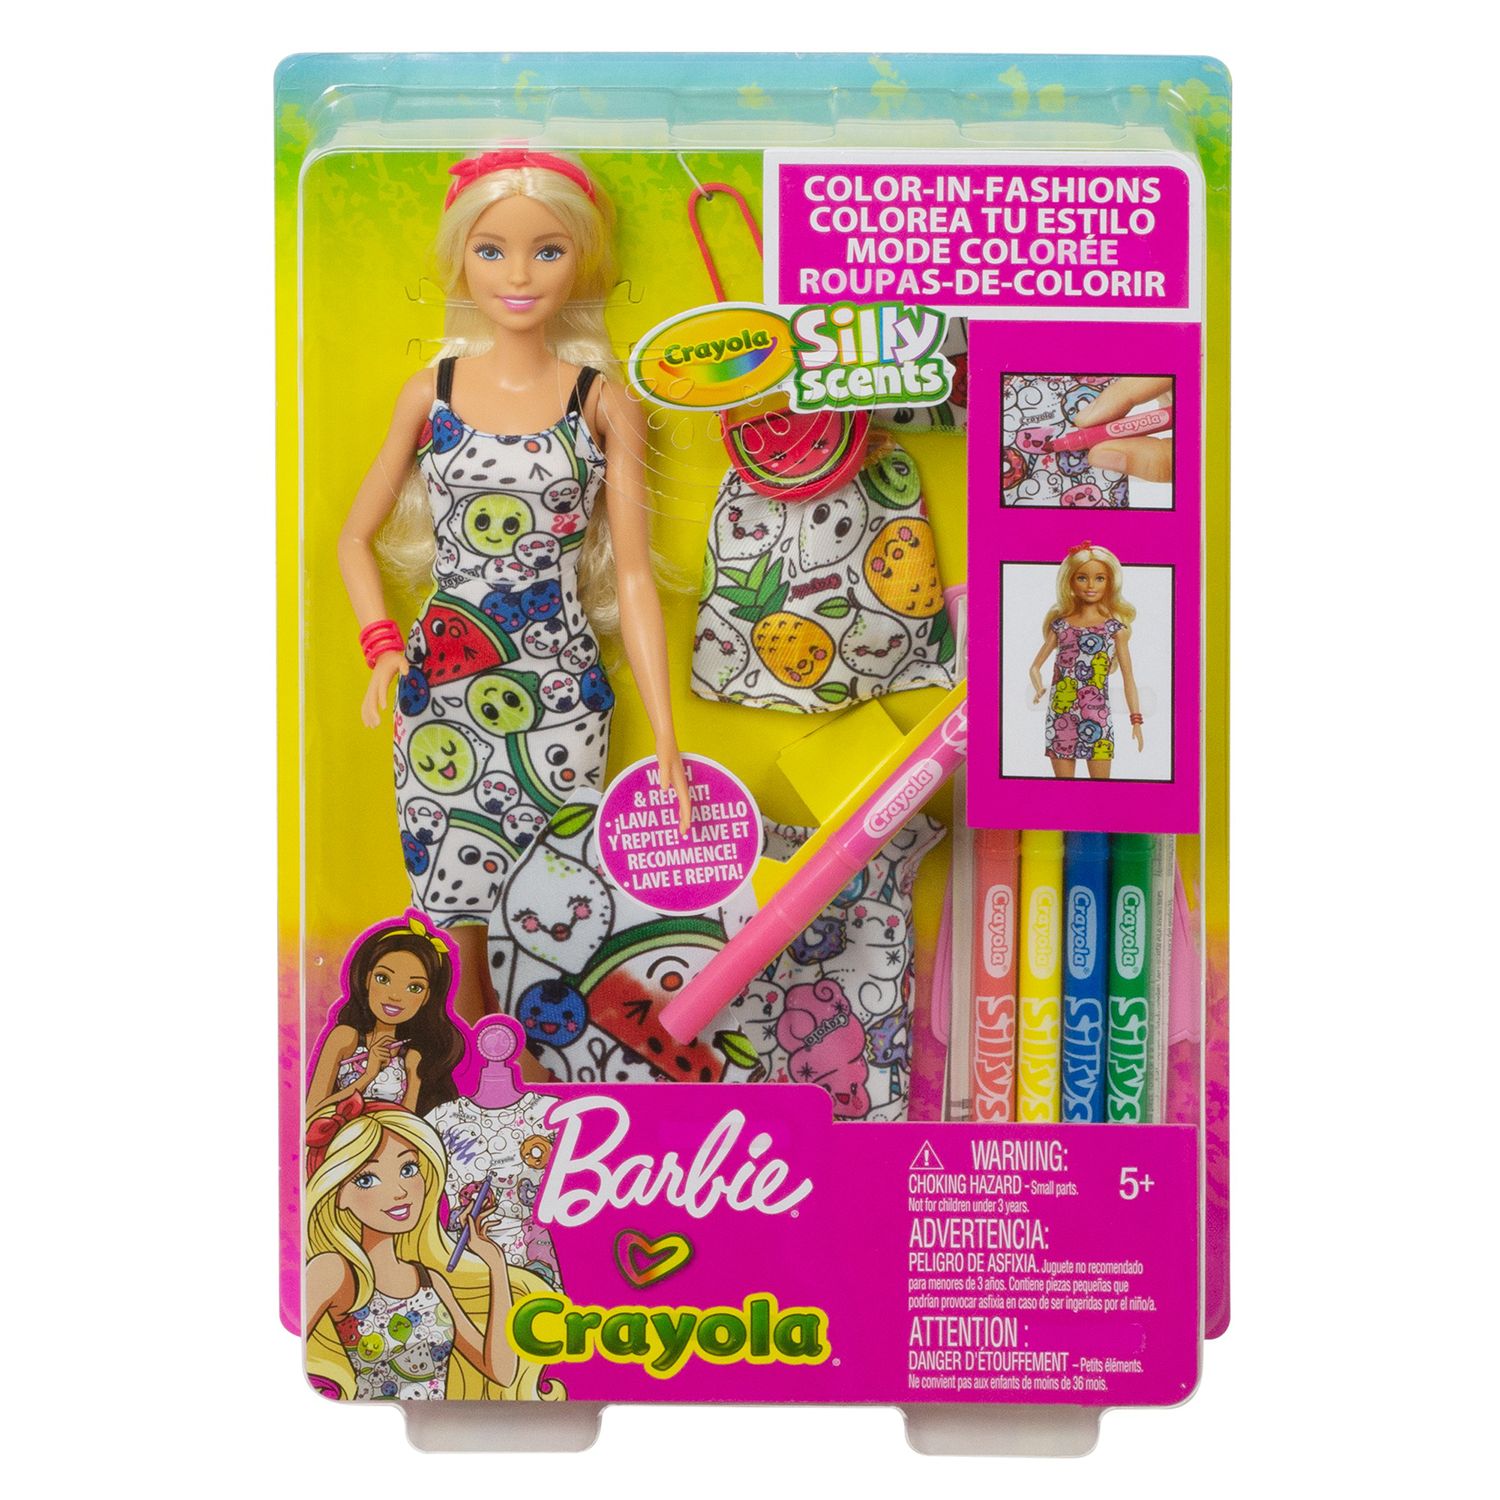 barbie crayola color in fashion